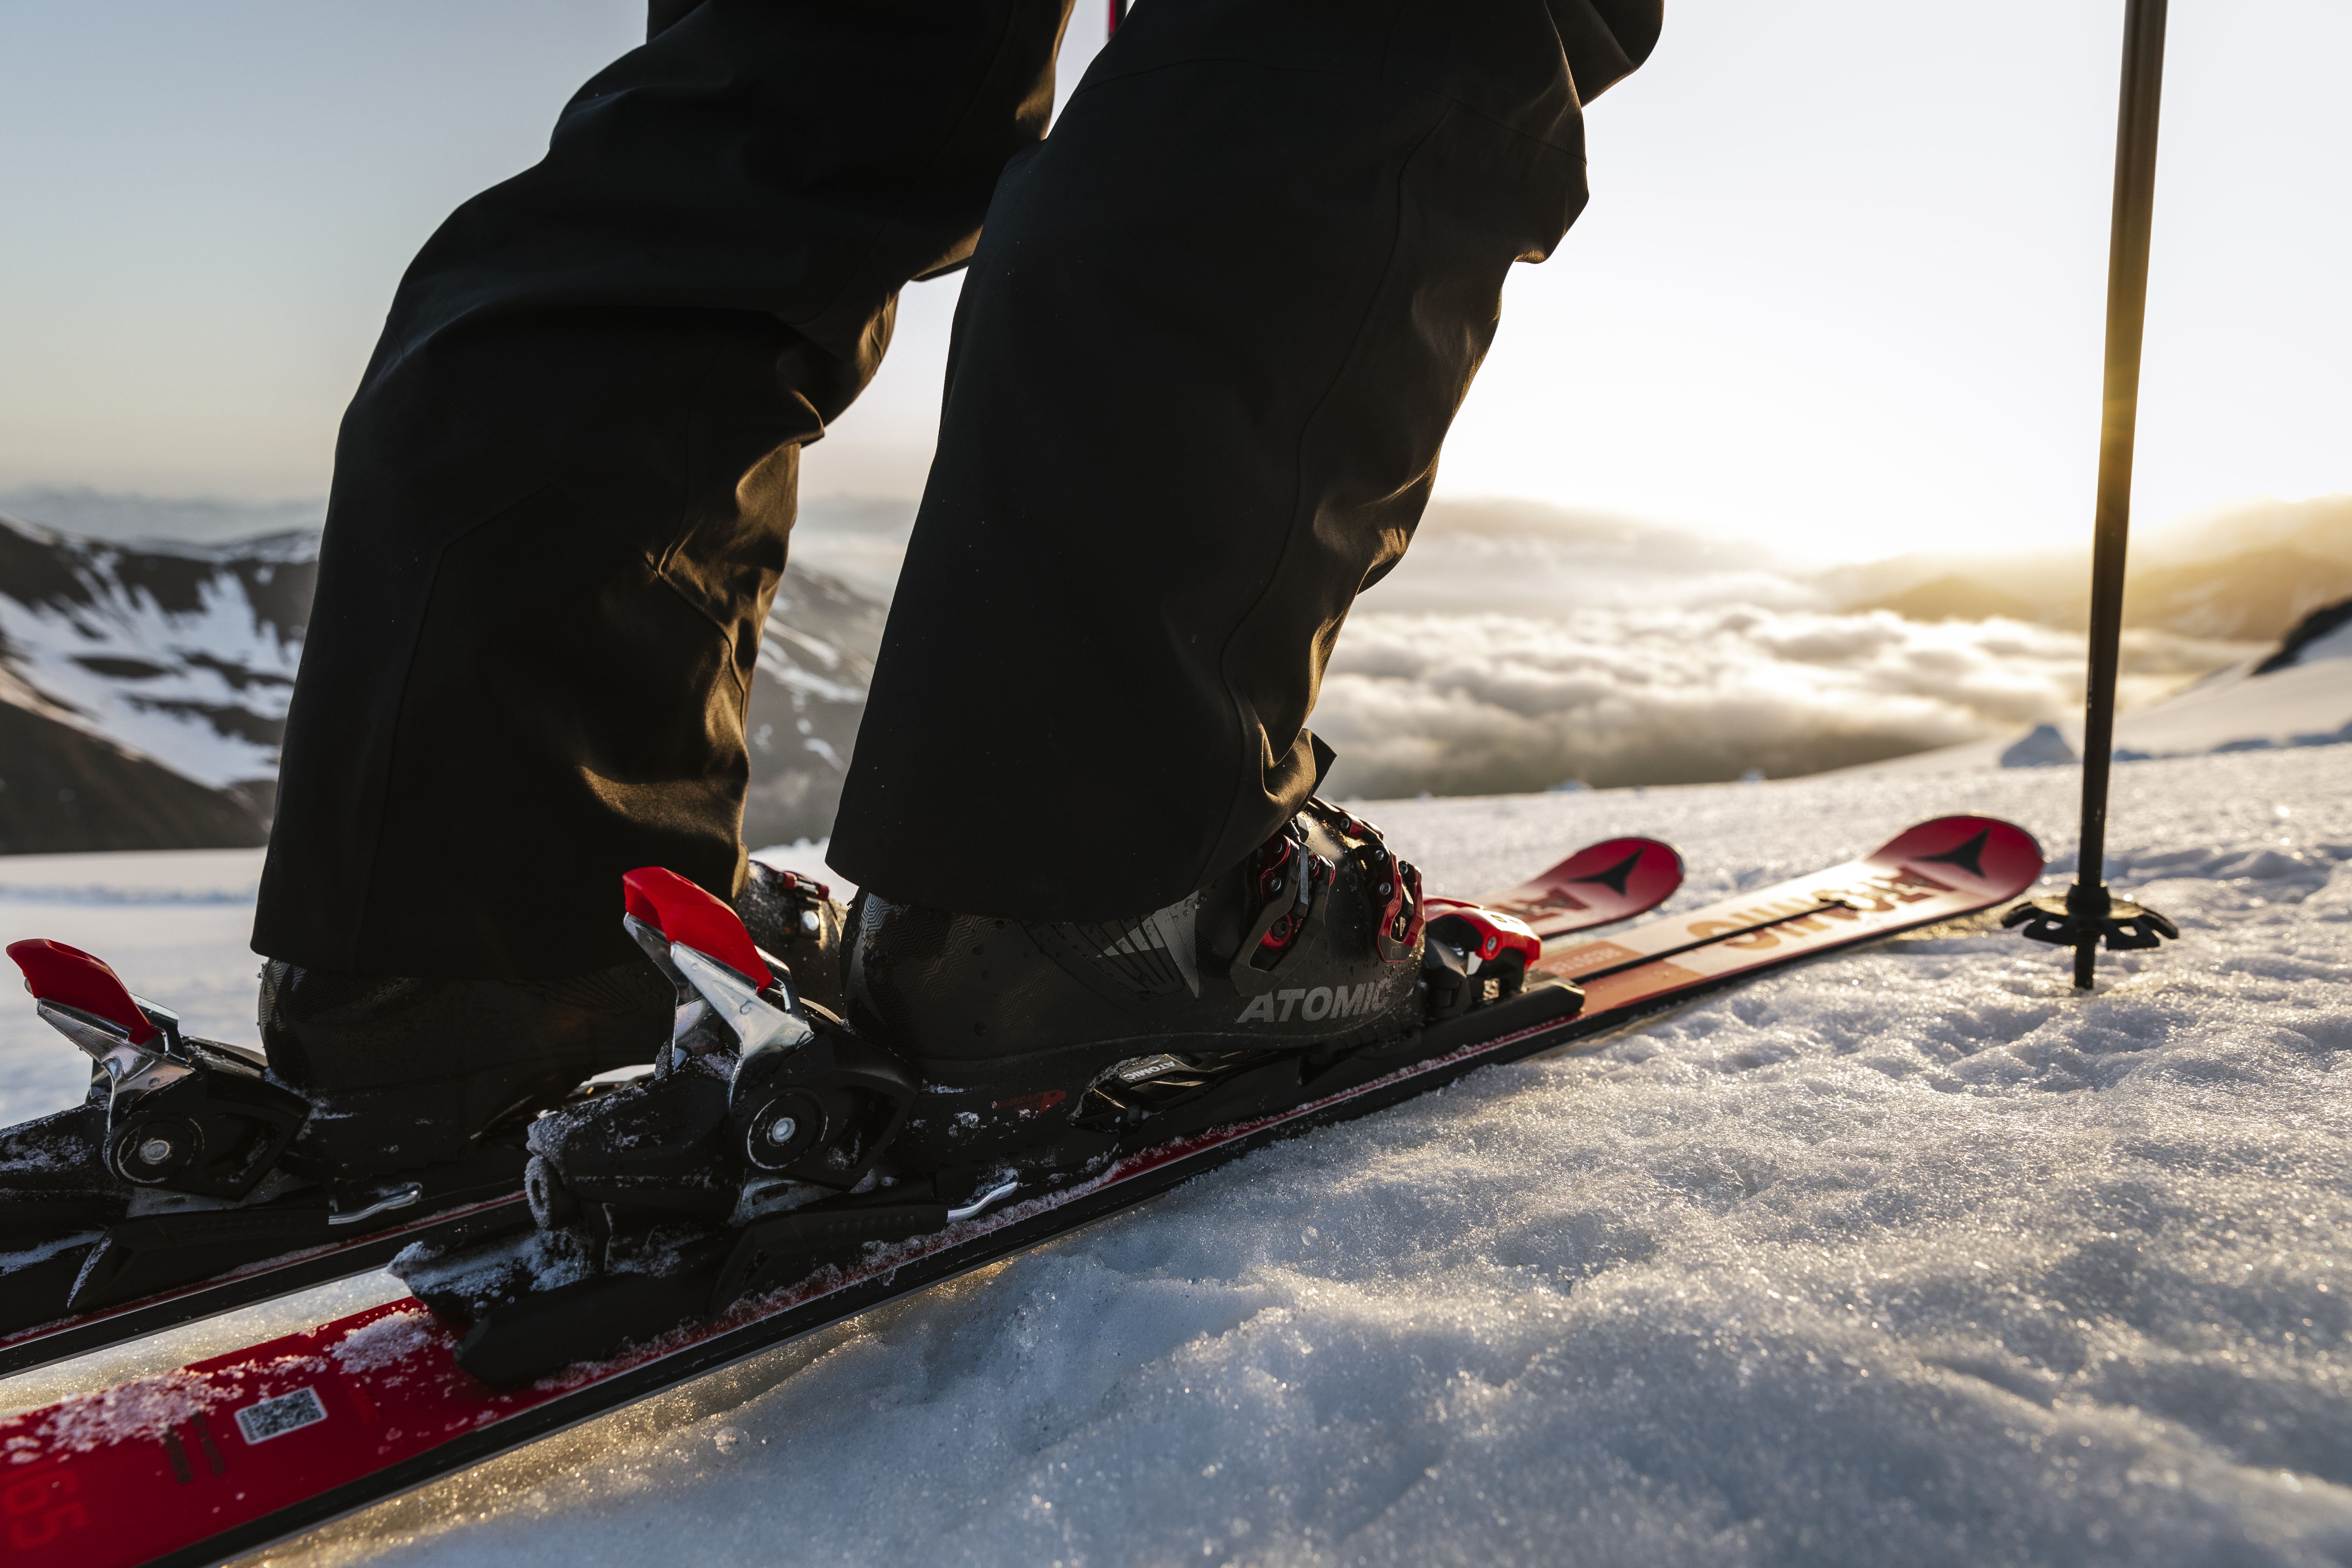 Conflict Uitgaan van wetenschappelijk Atomic Hawx: First Fit walhalla voor skischoenen? - Snowchamps